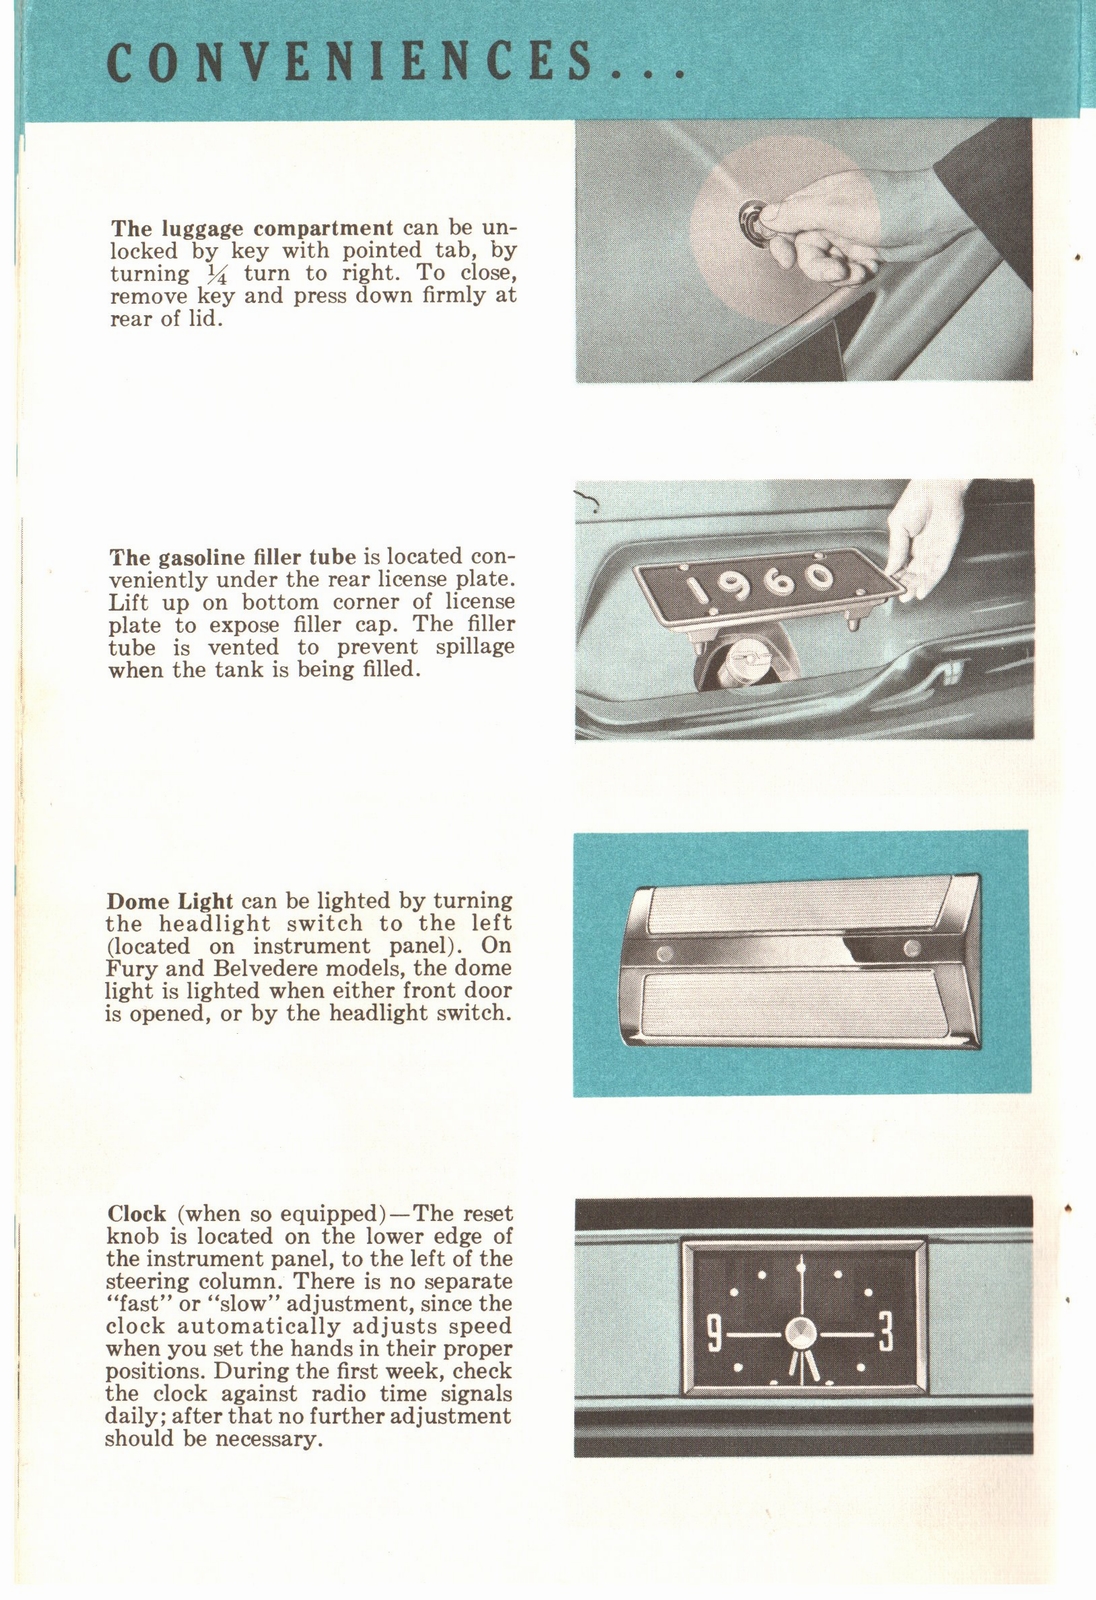 n_1960 Plymouth Owners Manual-14.jpg